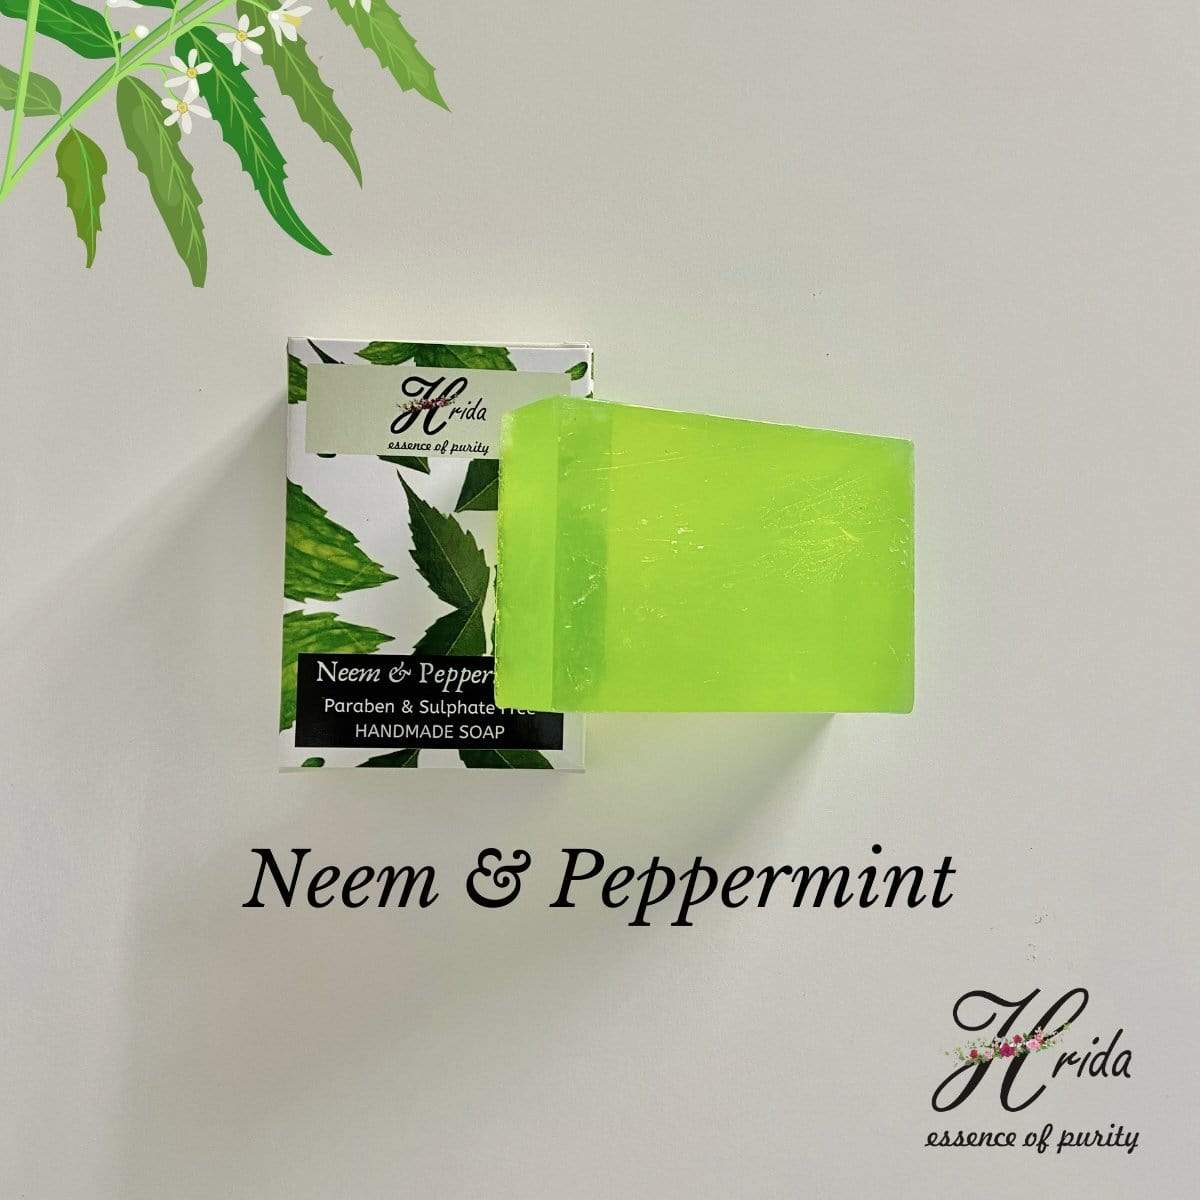 Hrida Neem & Peppermint Handmade Soap - hfnl!fe